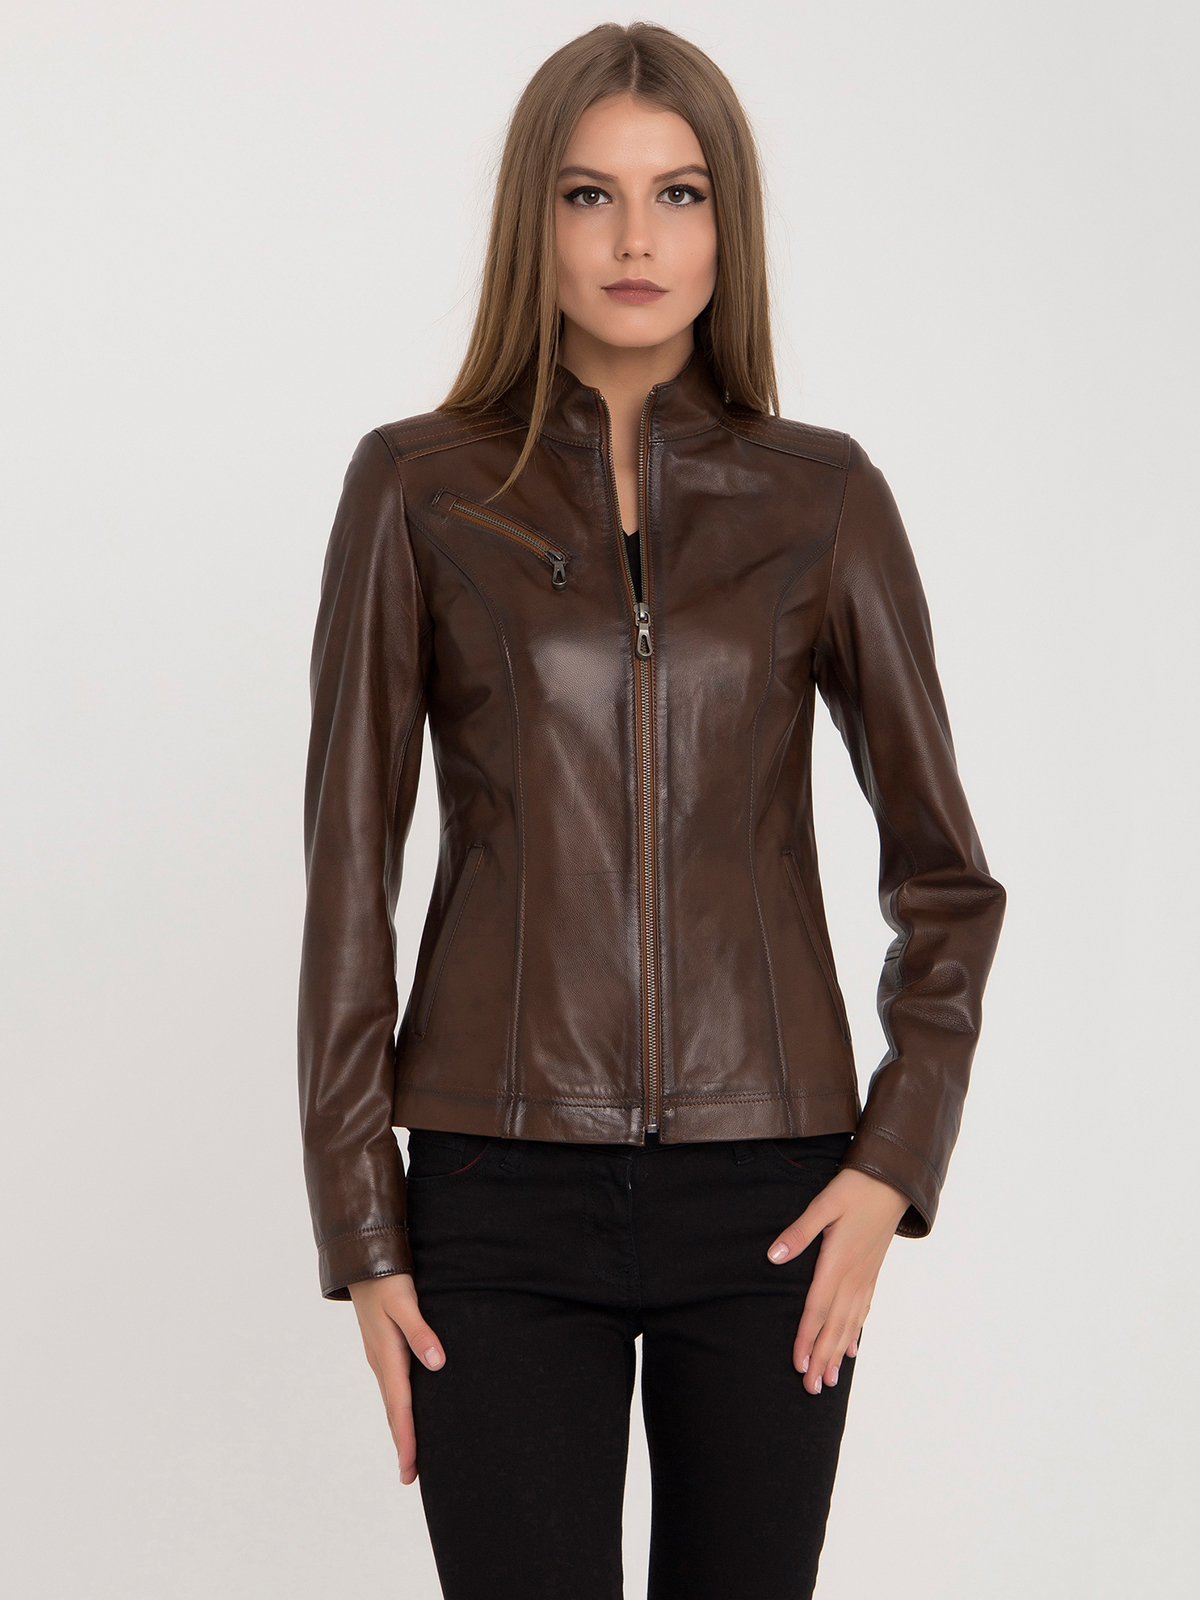 Куртка коричневая женская кожаная la qualita